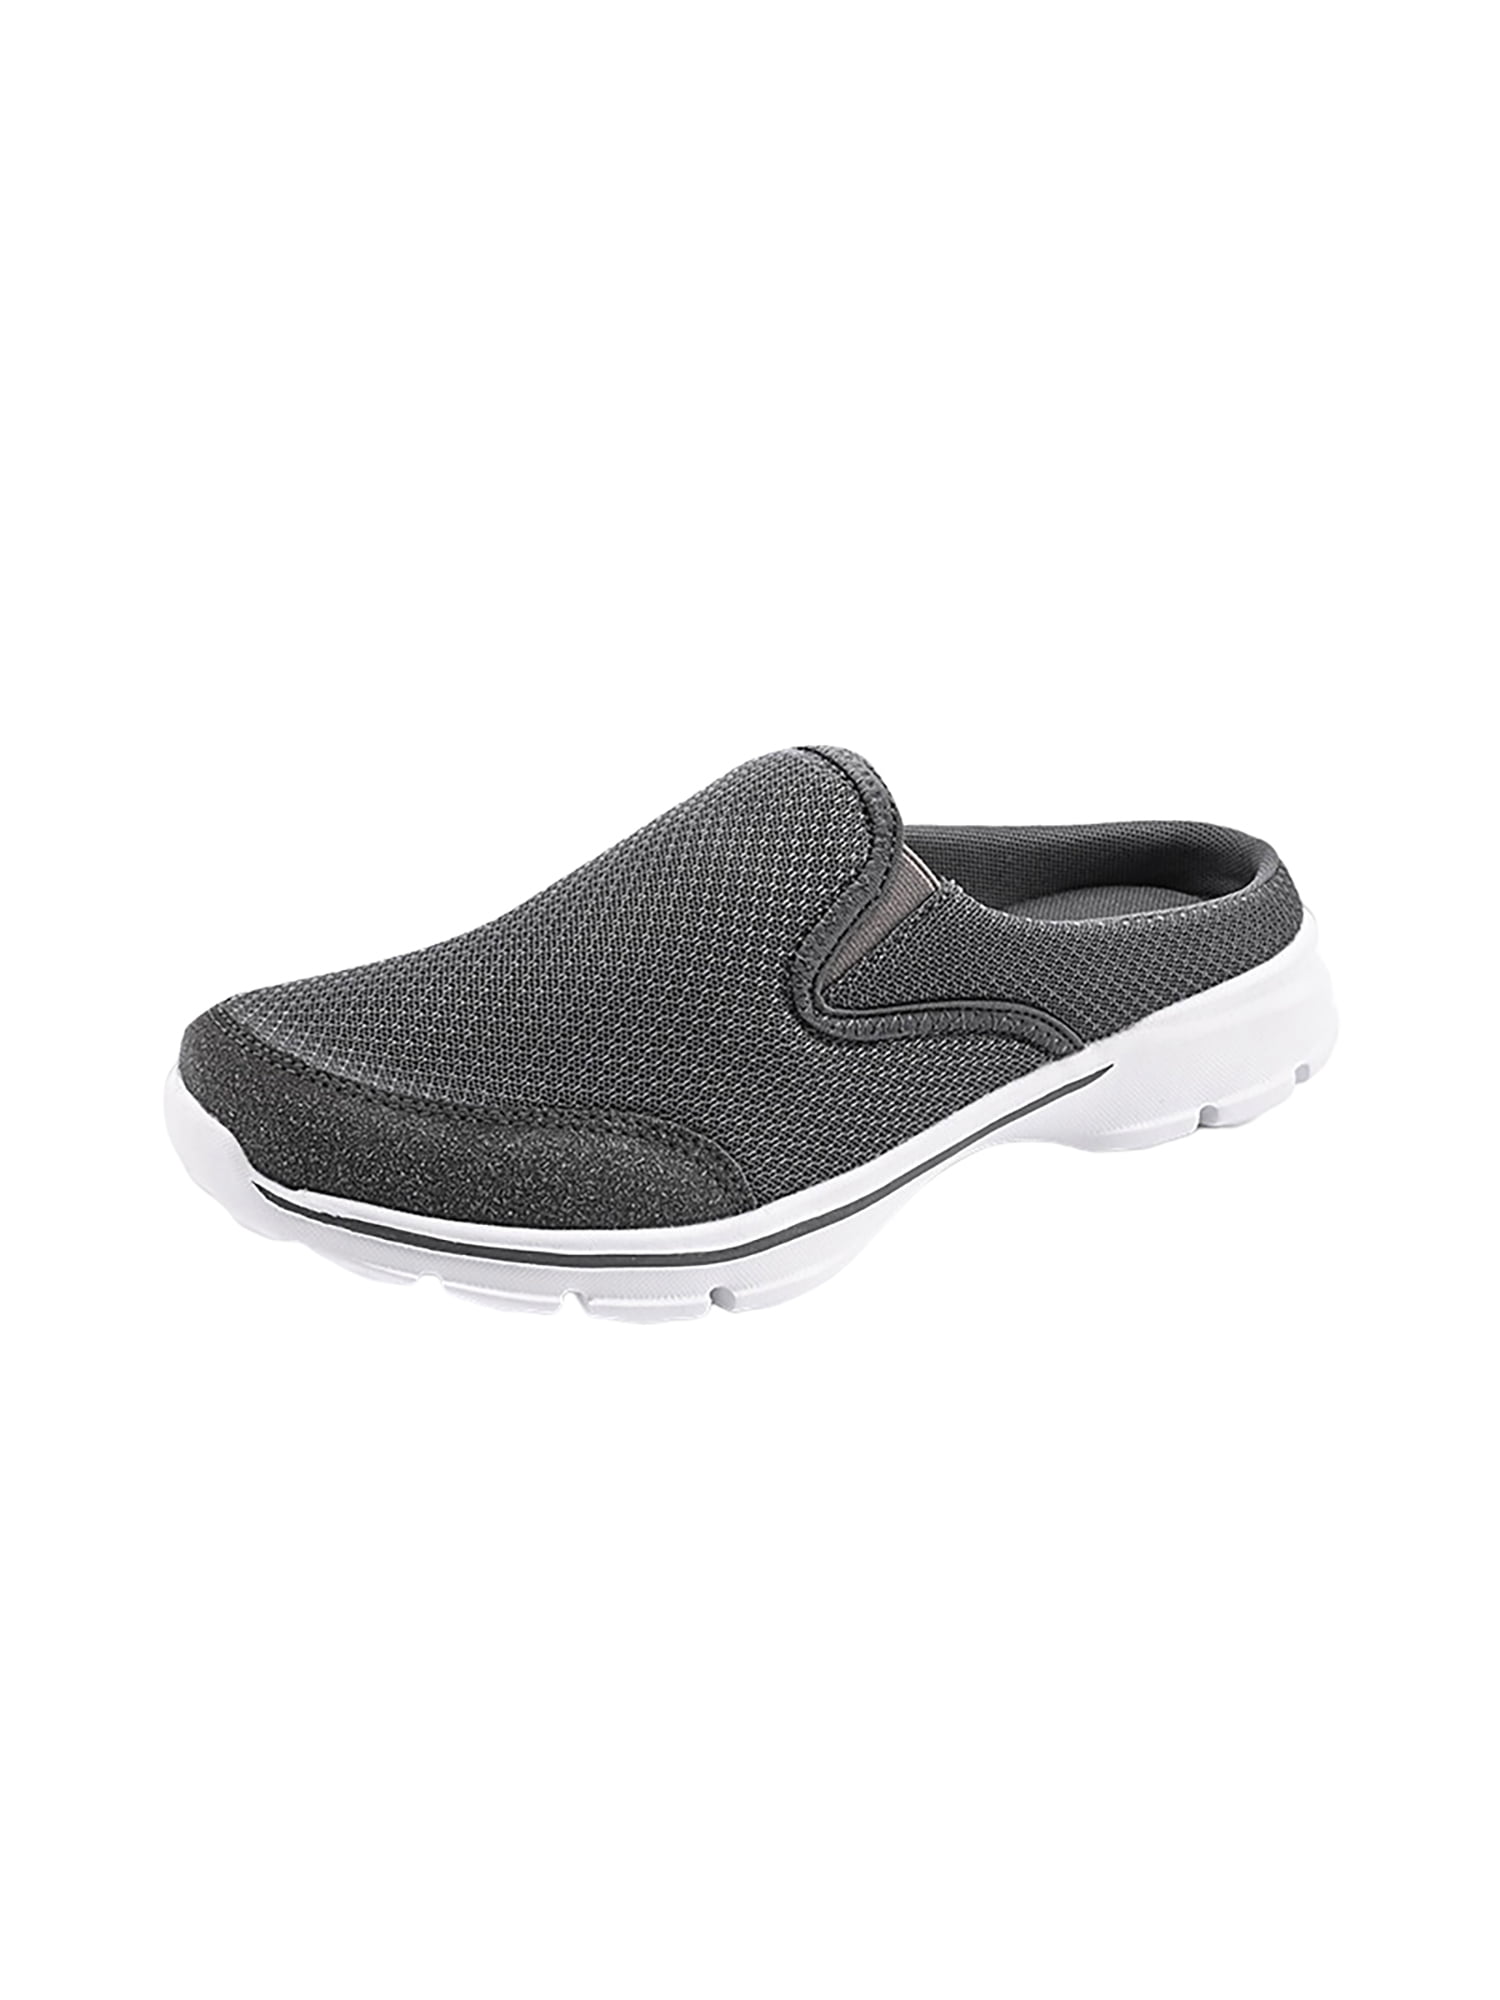 LUXUR Women's Backless Walking Sneakers Summer Slip-on Mule Shoes ...